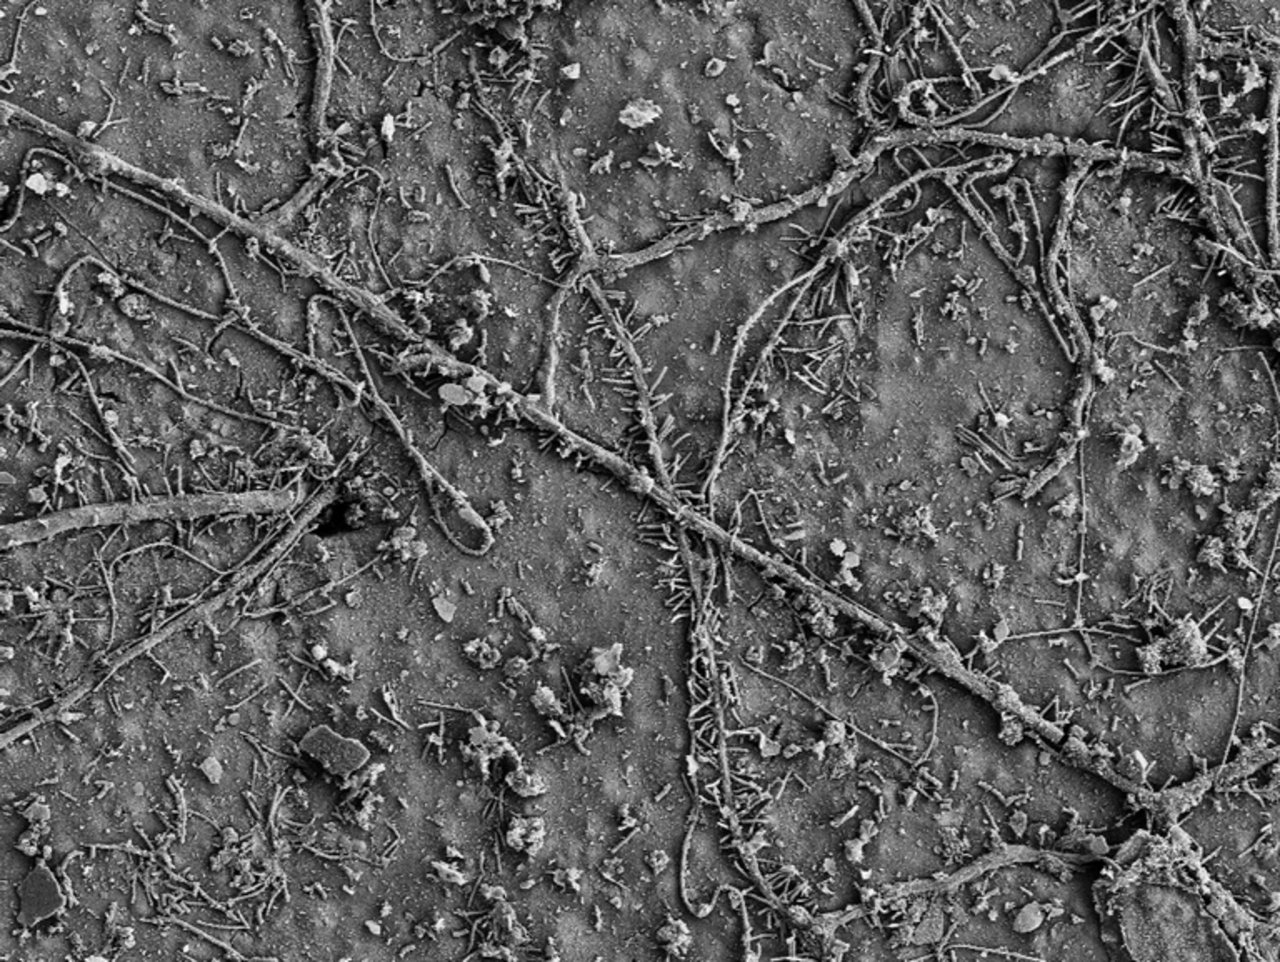 Nach wenigen Wochen im Boden besiedelten bereits zahlreiche Mikroorganismen die Oberfläche der PBAT-Folie und hatten mit dem biologischen Abbau des Polymers begonnen. (Bild ETH Zürich / Environmental Chemistry Group)